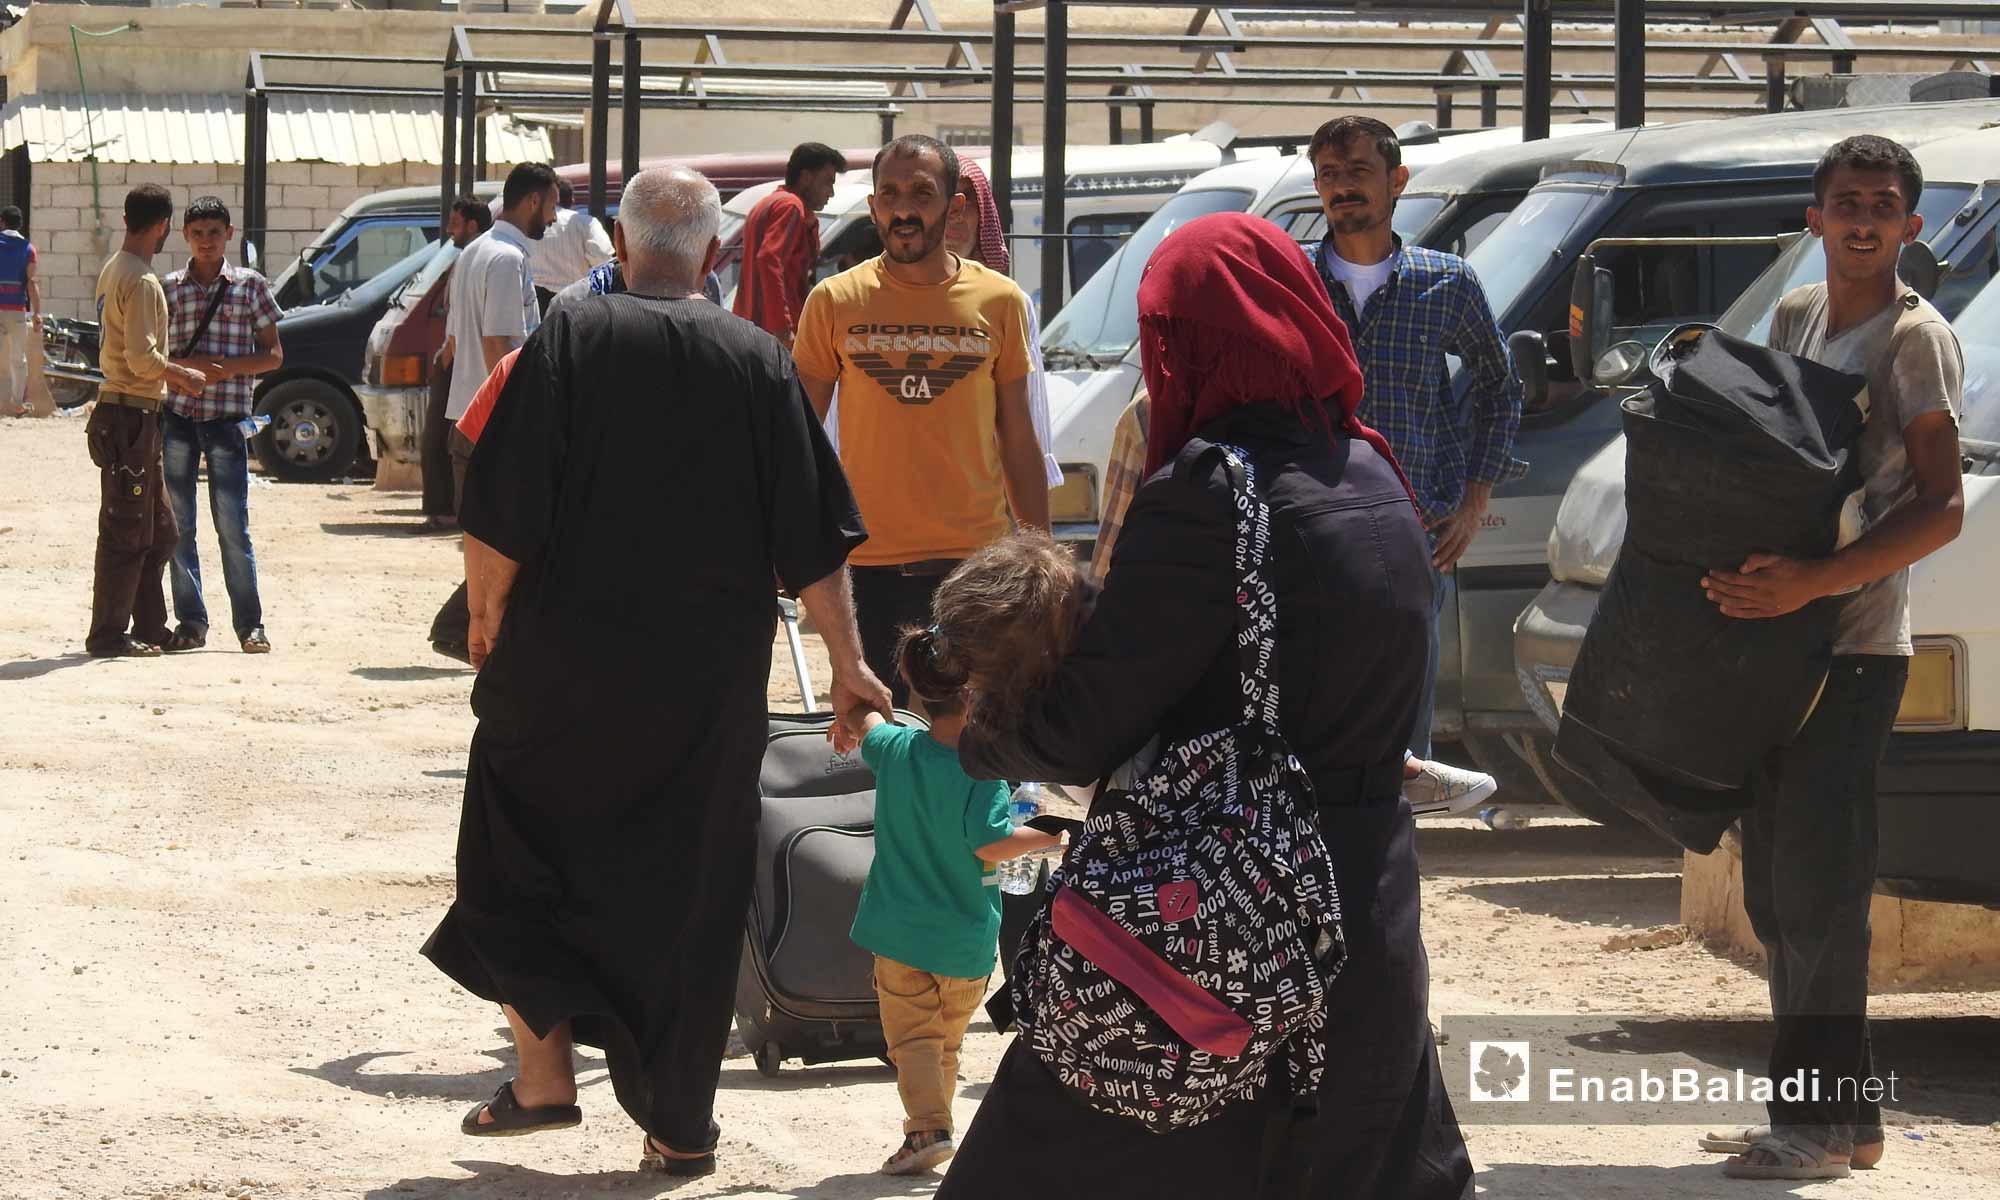 أهالي ريف حلب الشمالي المقيمين في تركيا أثناء زيارتهم شمال حلب عبر معبر باب السلامة - 13 حزيران 2017 - (عنب بلدي)